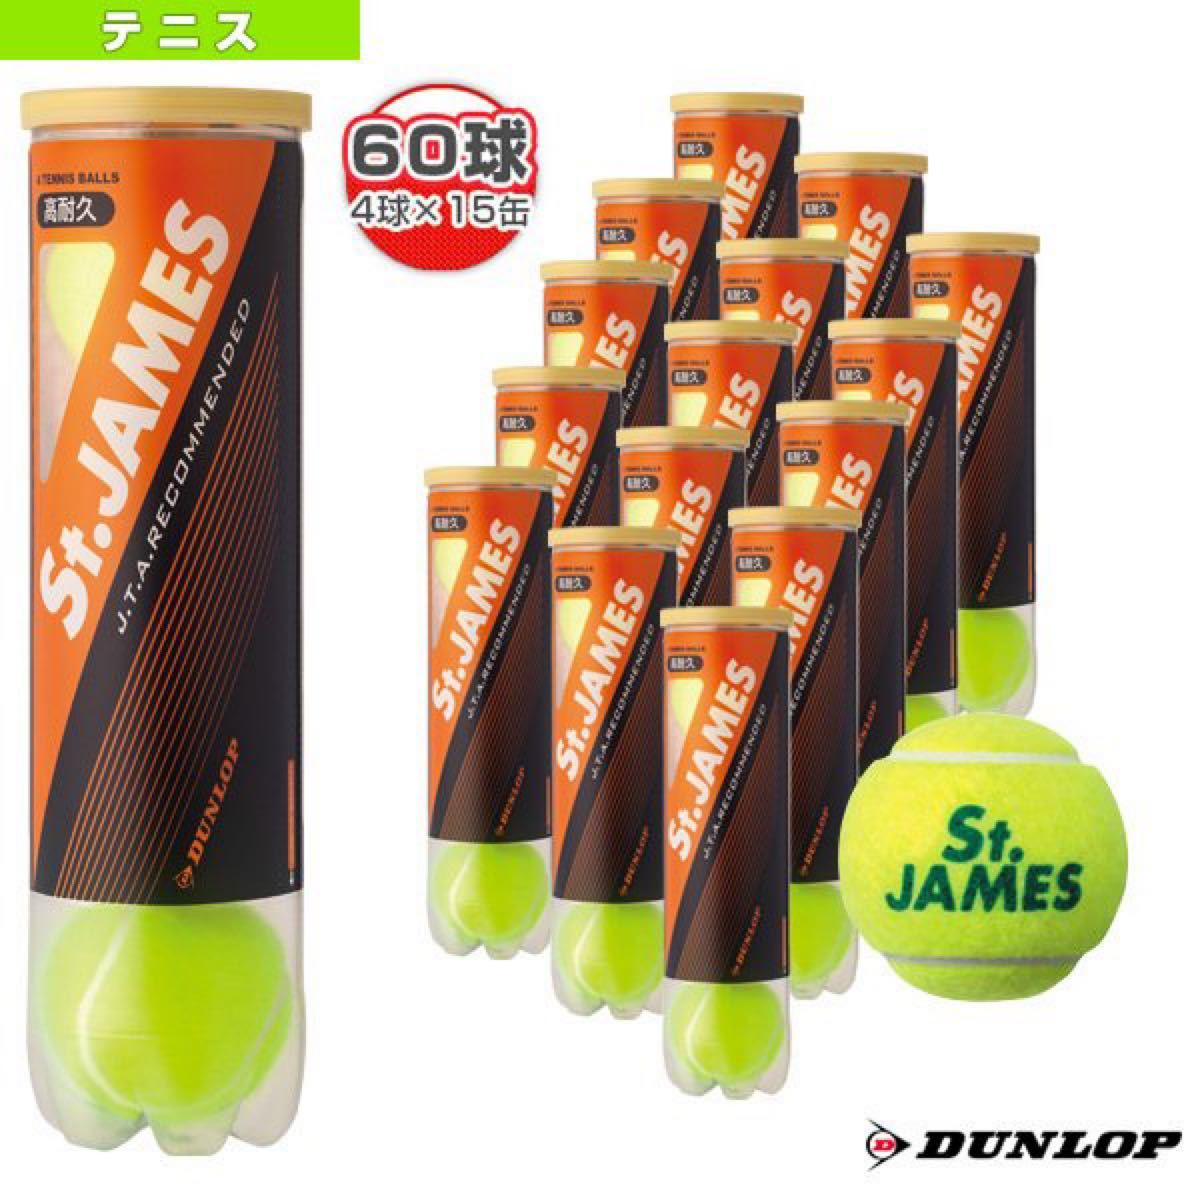 251円 印象のデザイン 硬式テニスボール4個